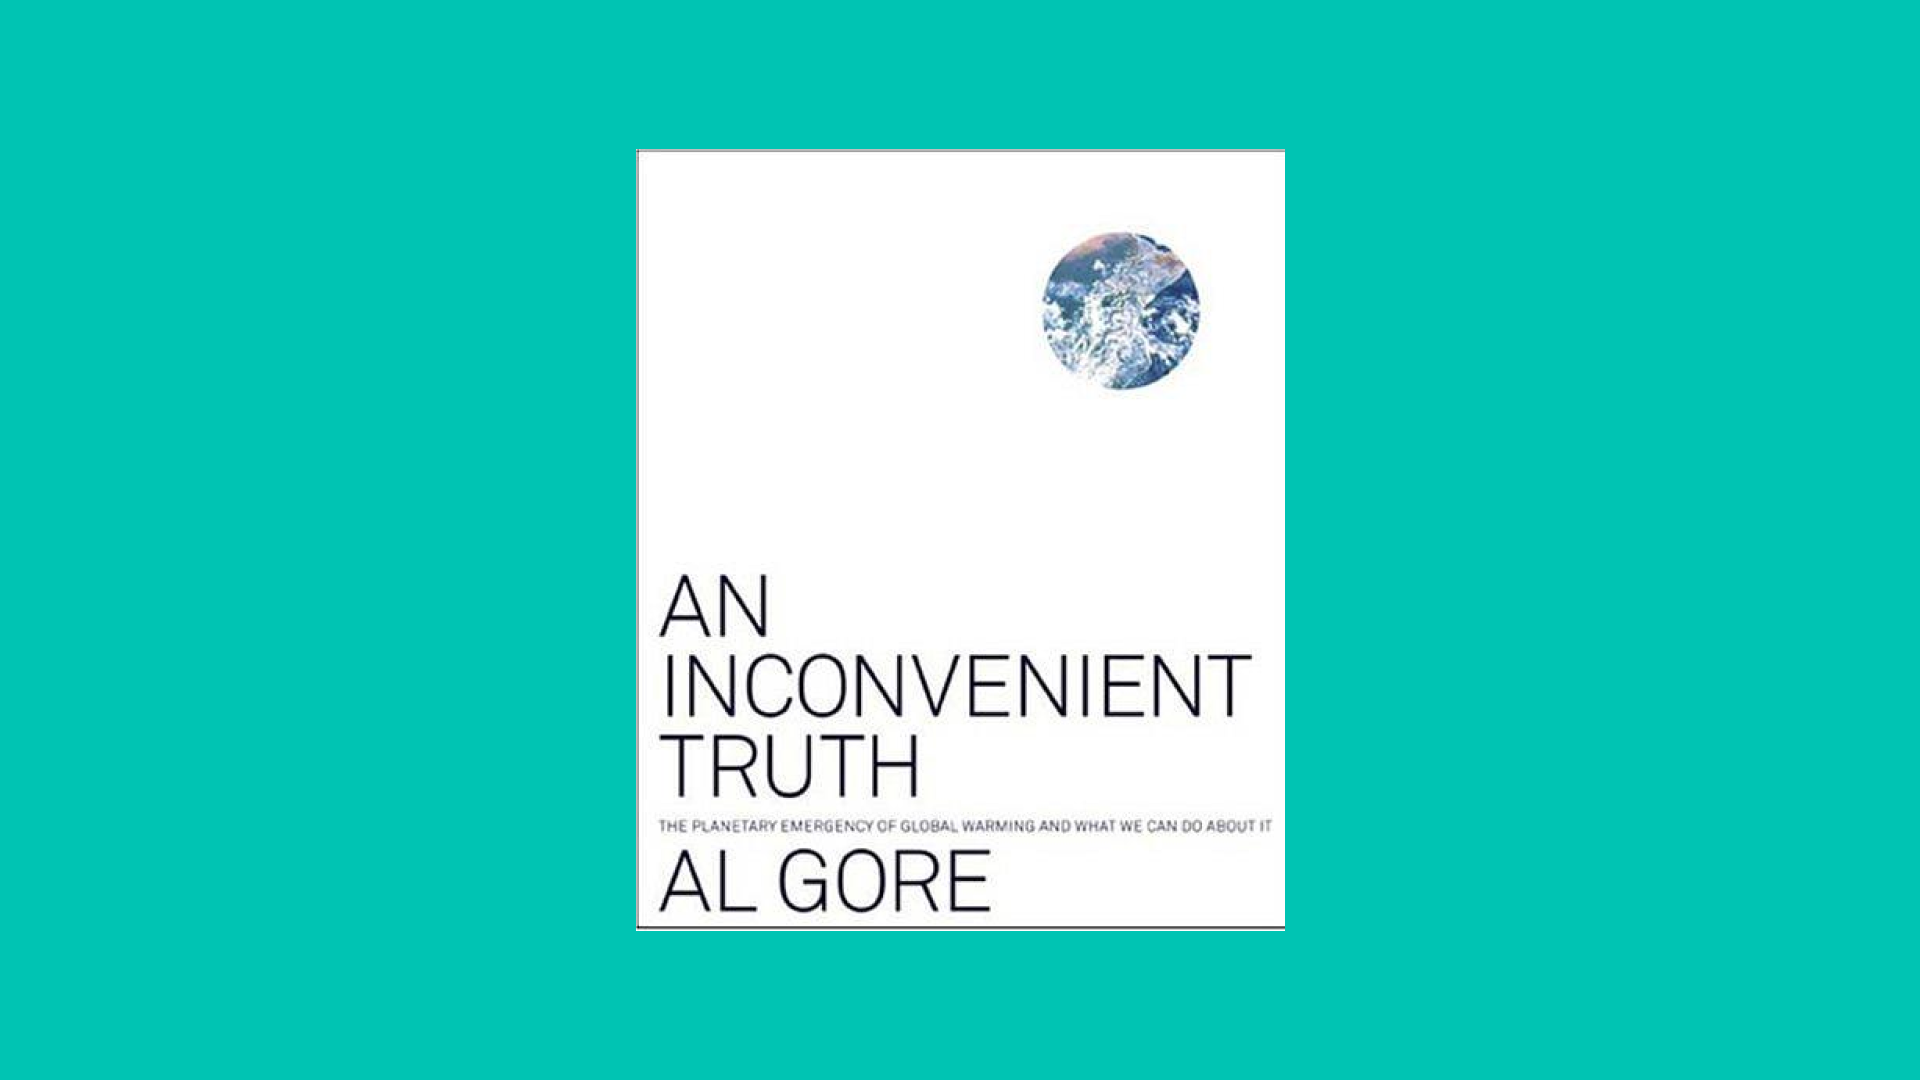 “An Inconvenient Truth” by Al Gore